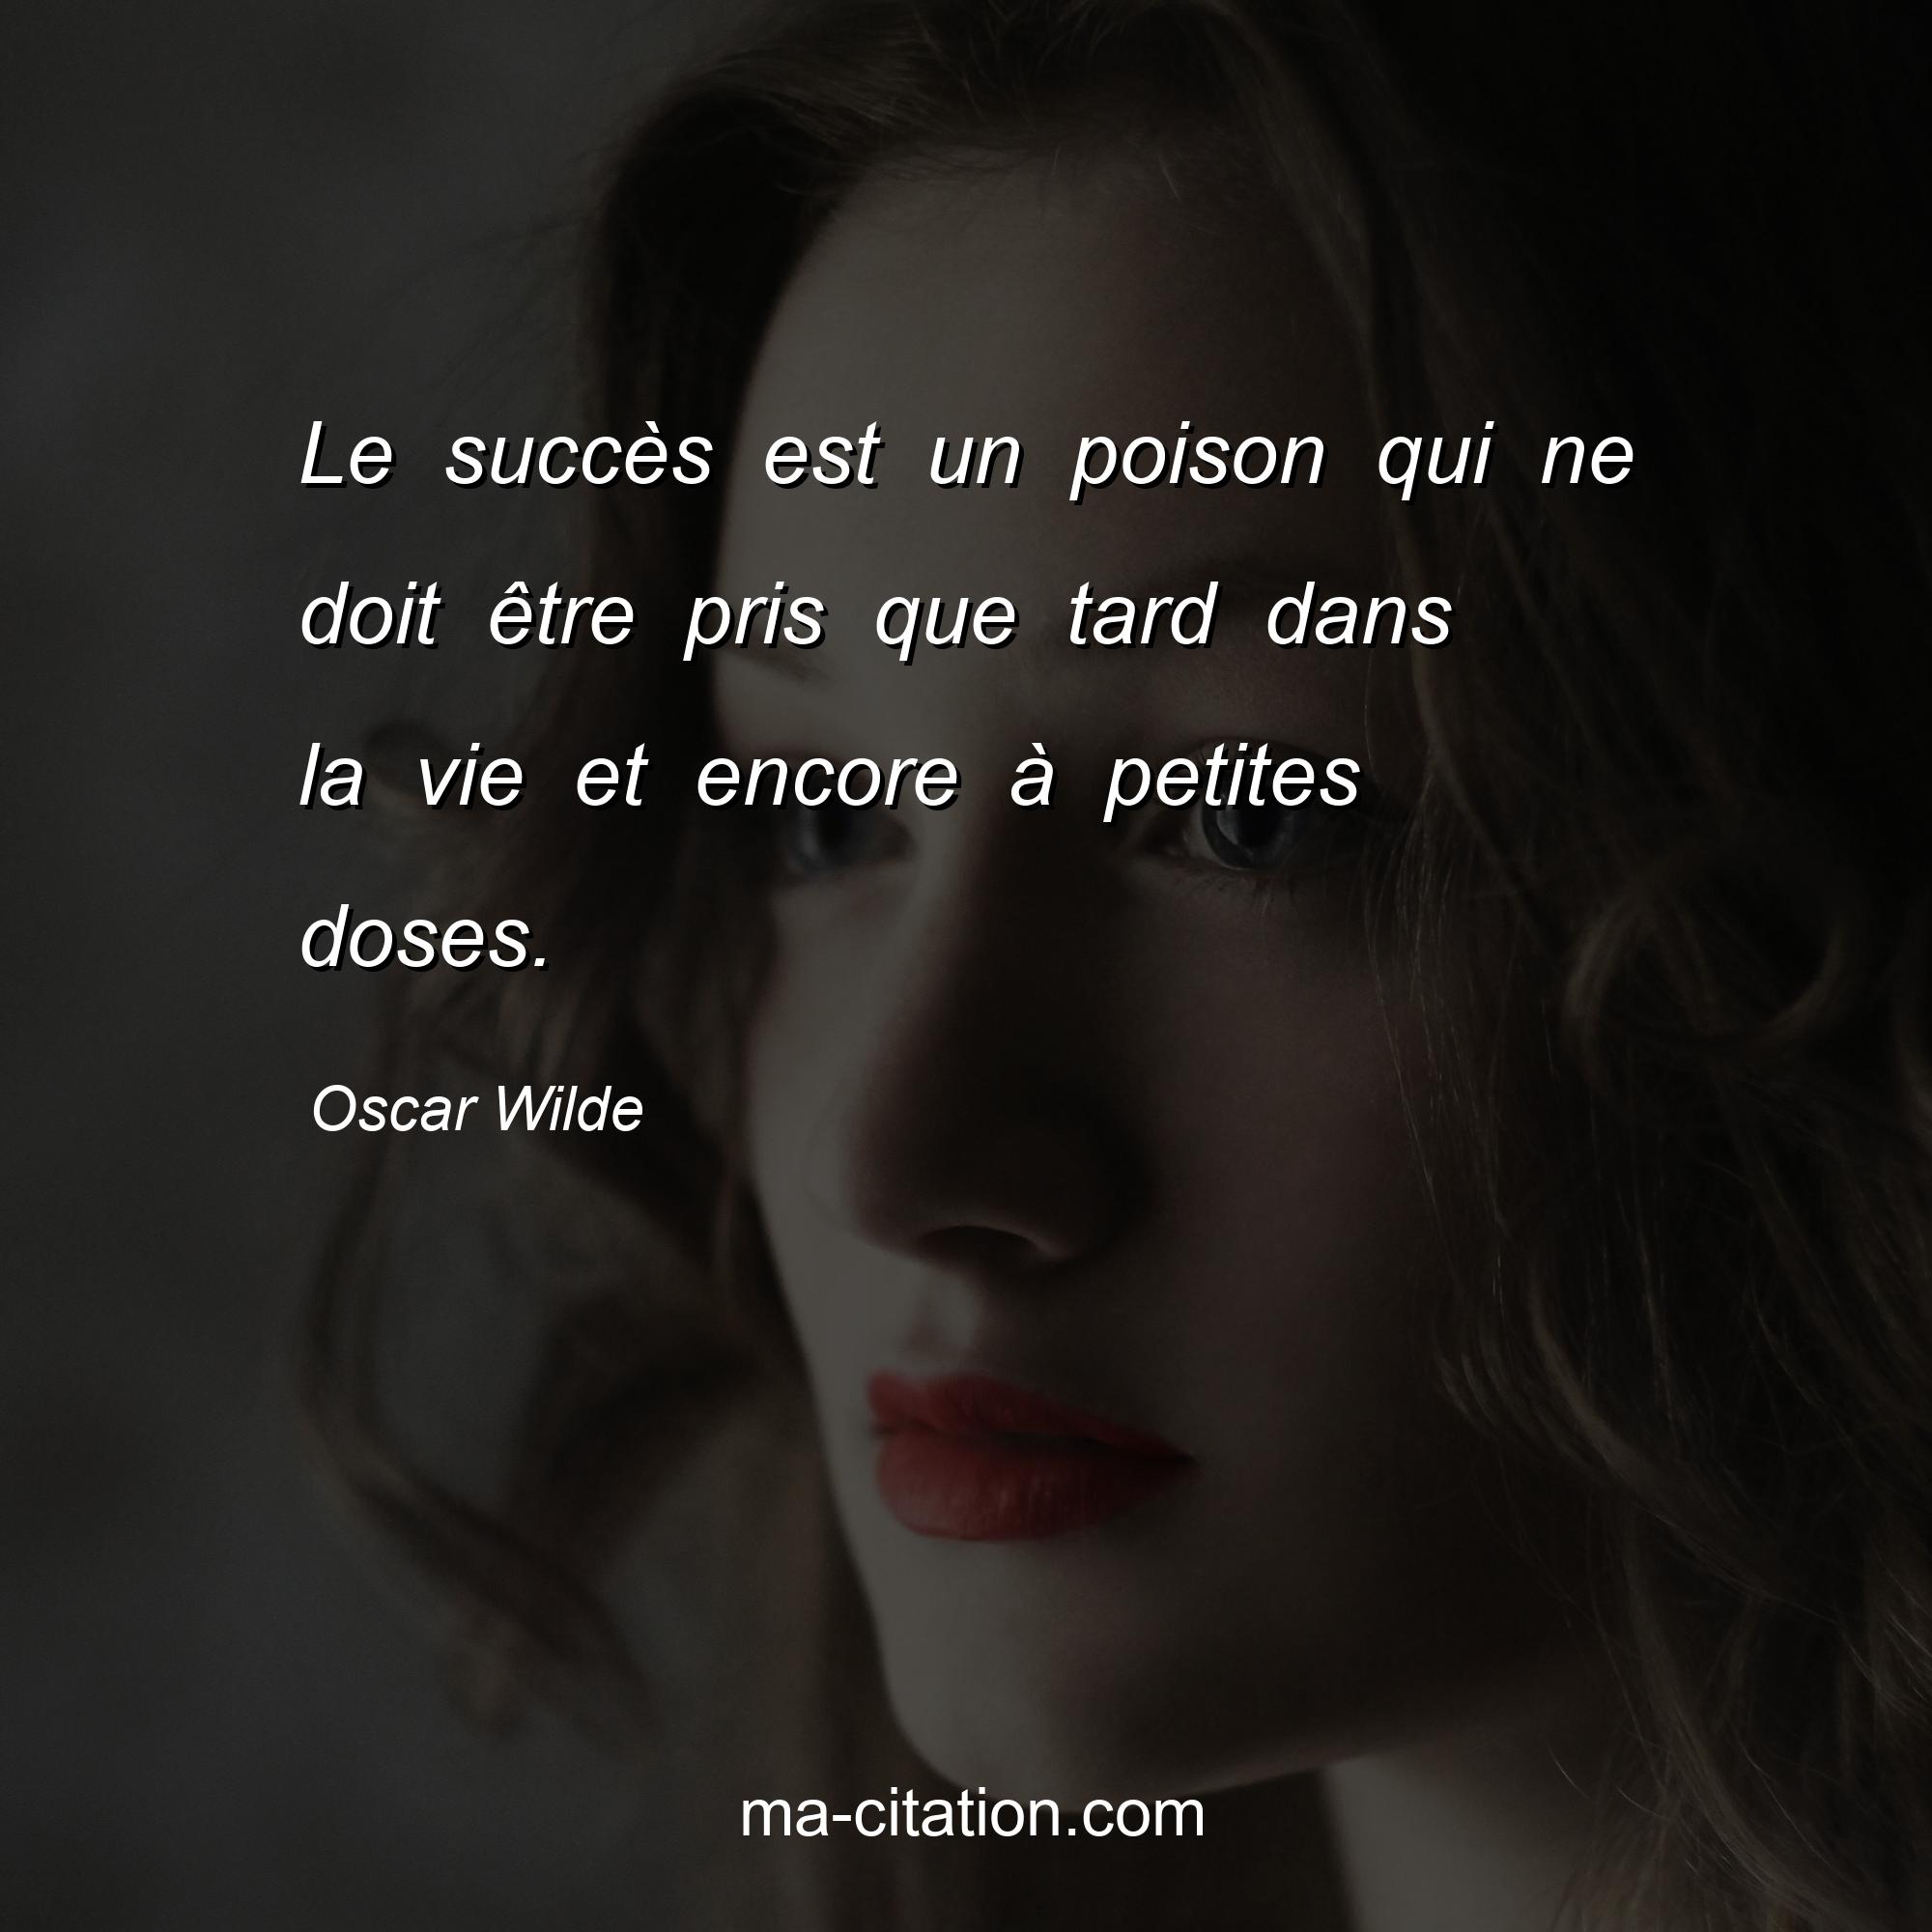 Oscar Wilde : Le succès est un poison qui ne doit être pris que tard dans la vie et encore à petites doses.